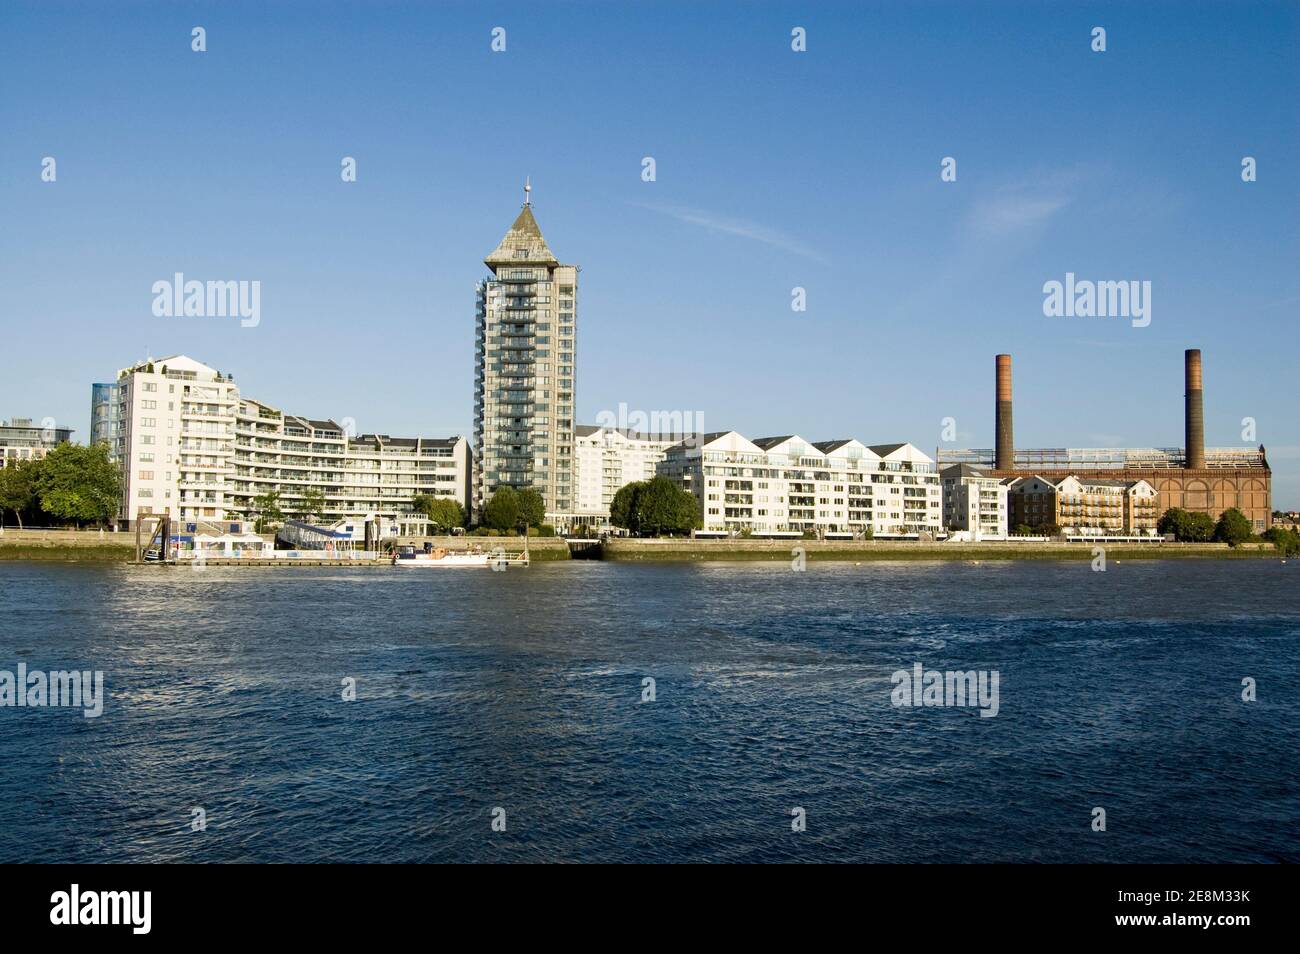 Les appartements coûteux au bord de la rivière de Chelsea Harbour donnent sur la Tamise à Londres. La station électrique de lots Road est à droite. Banque D'Images